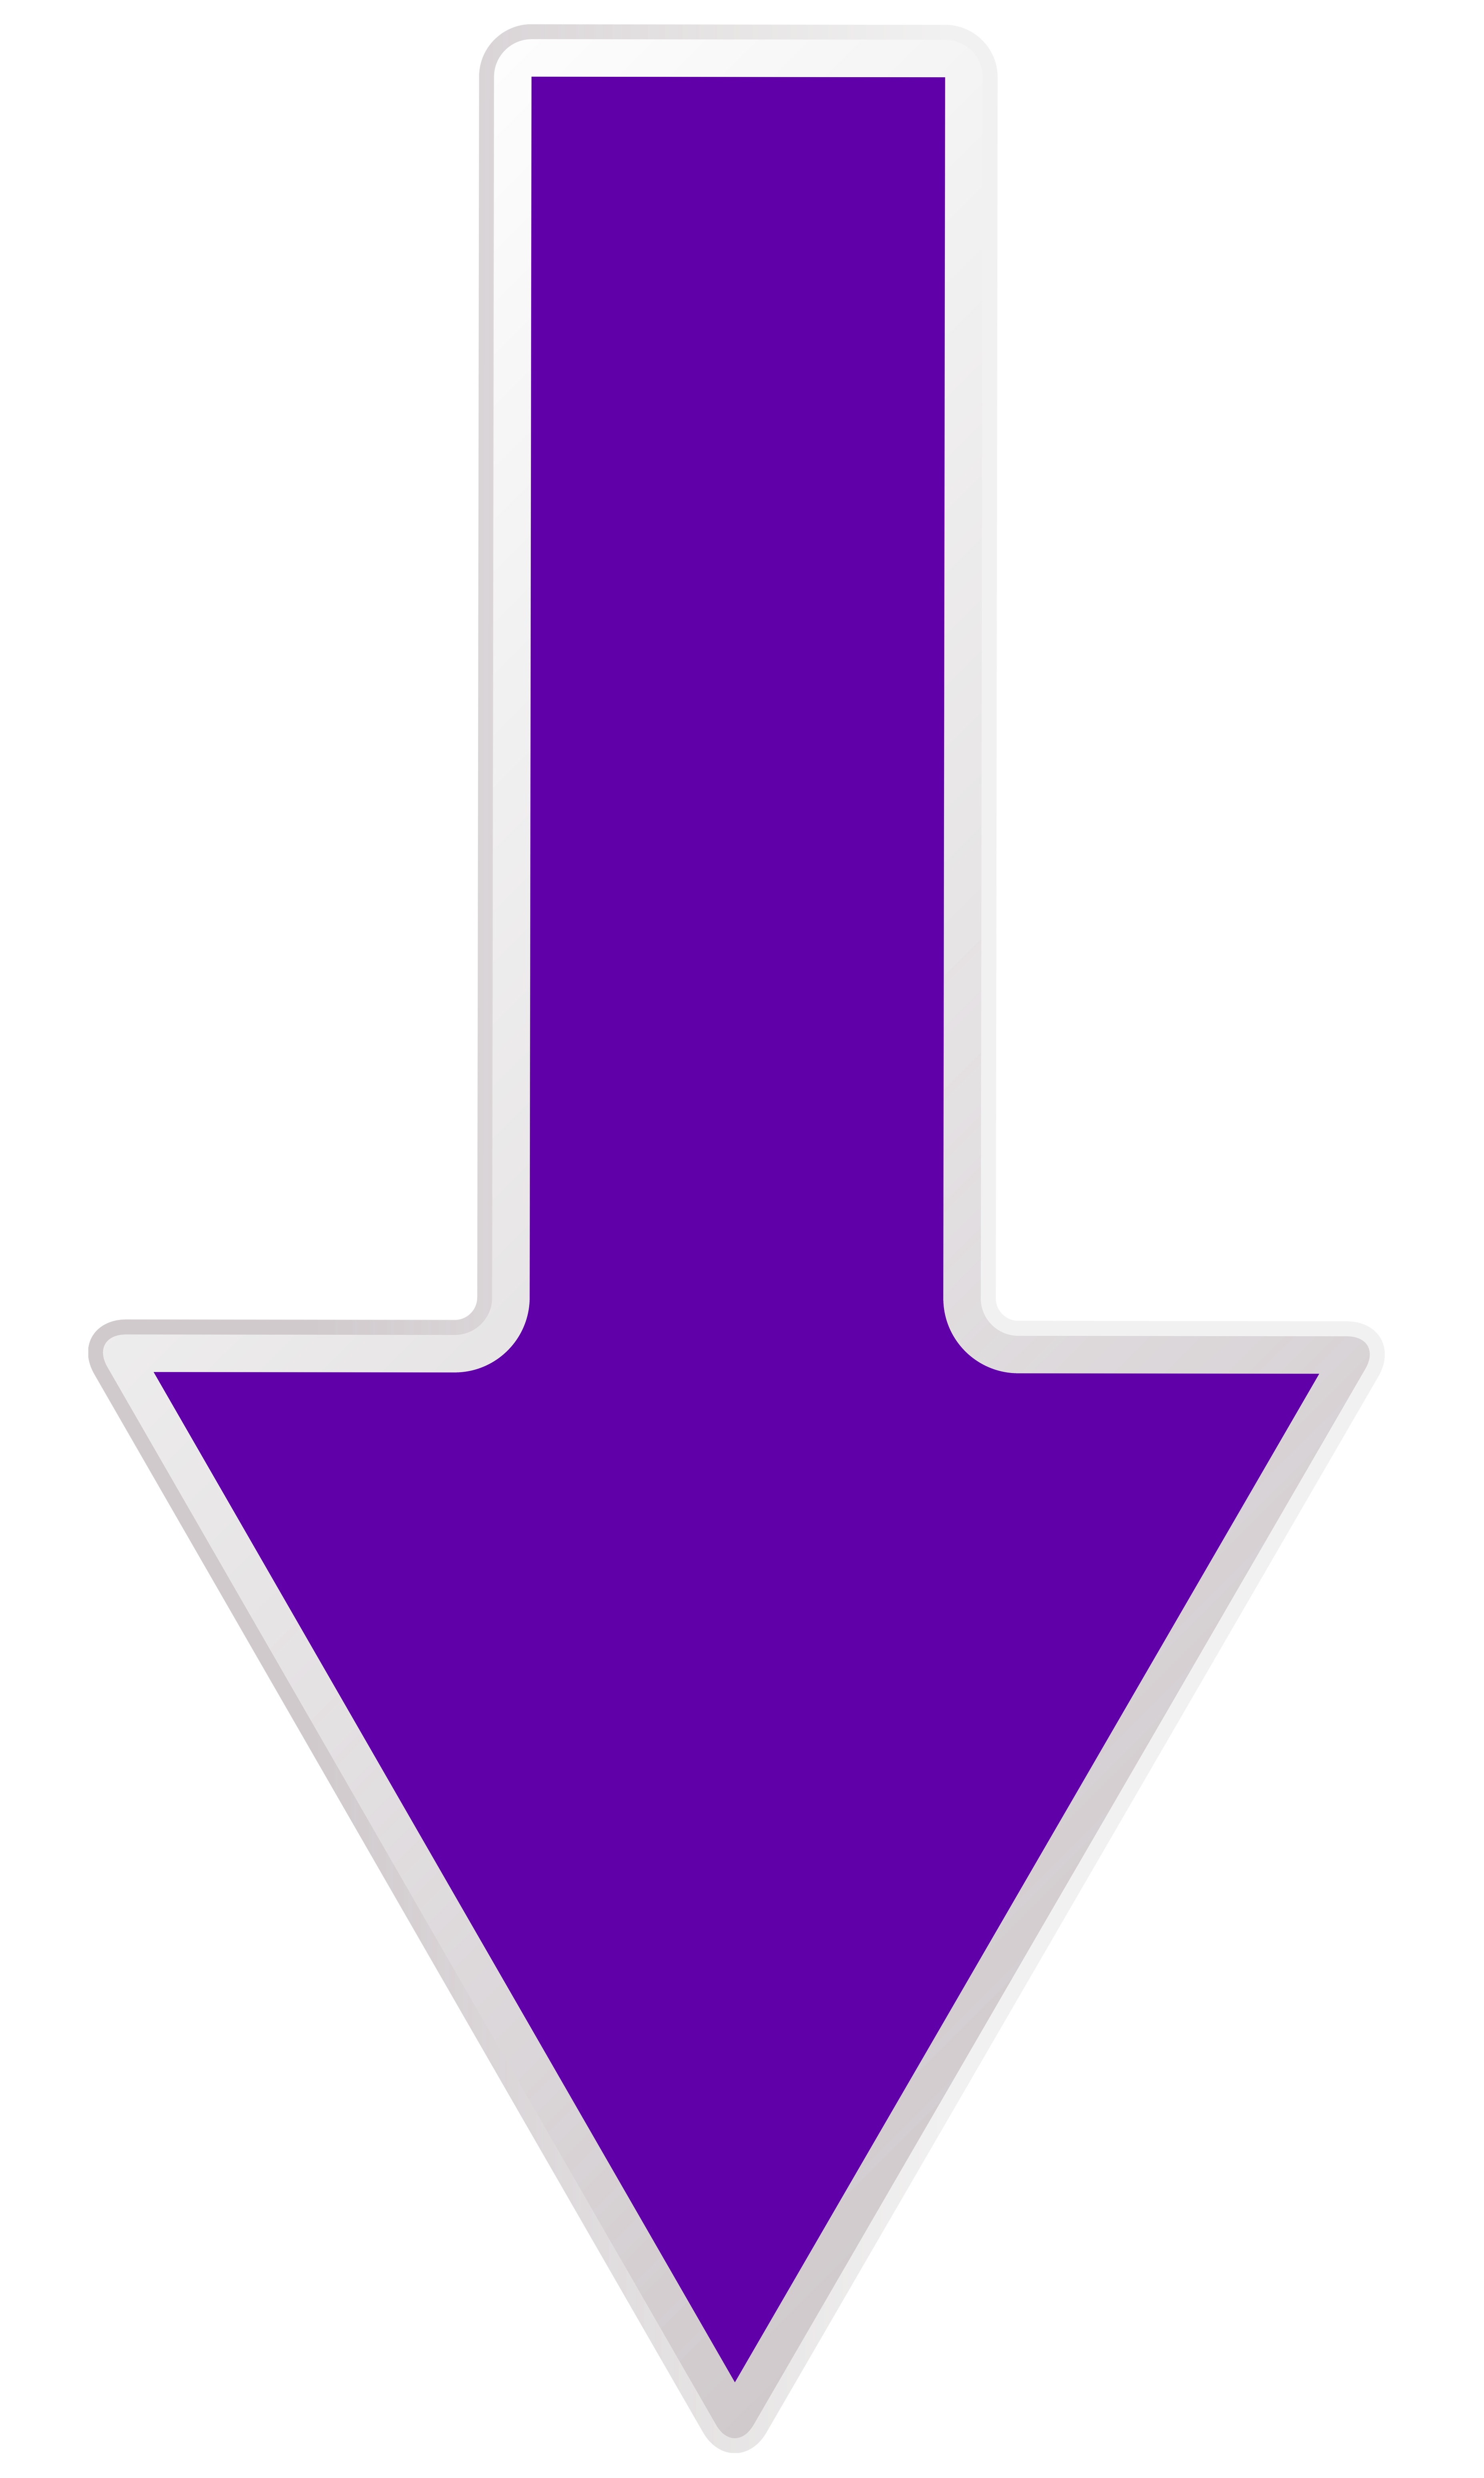 Arrow Purple Down Transparent PNG Clip Art Image​